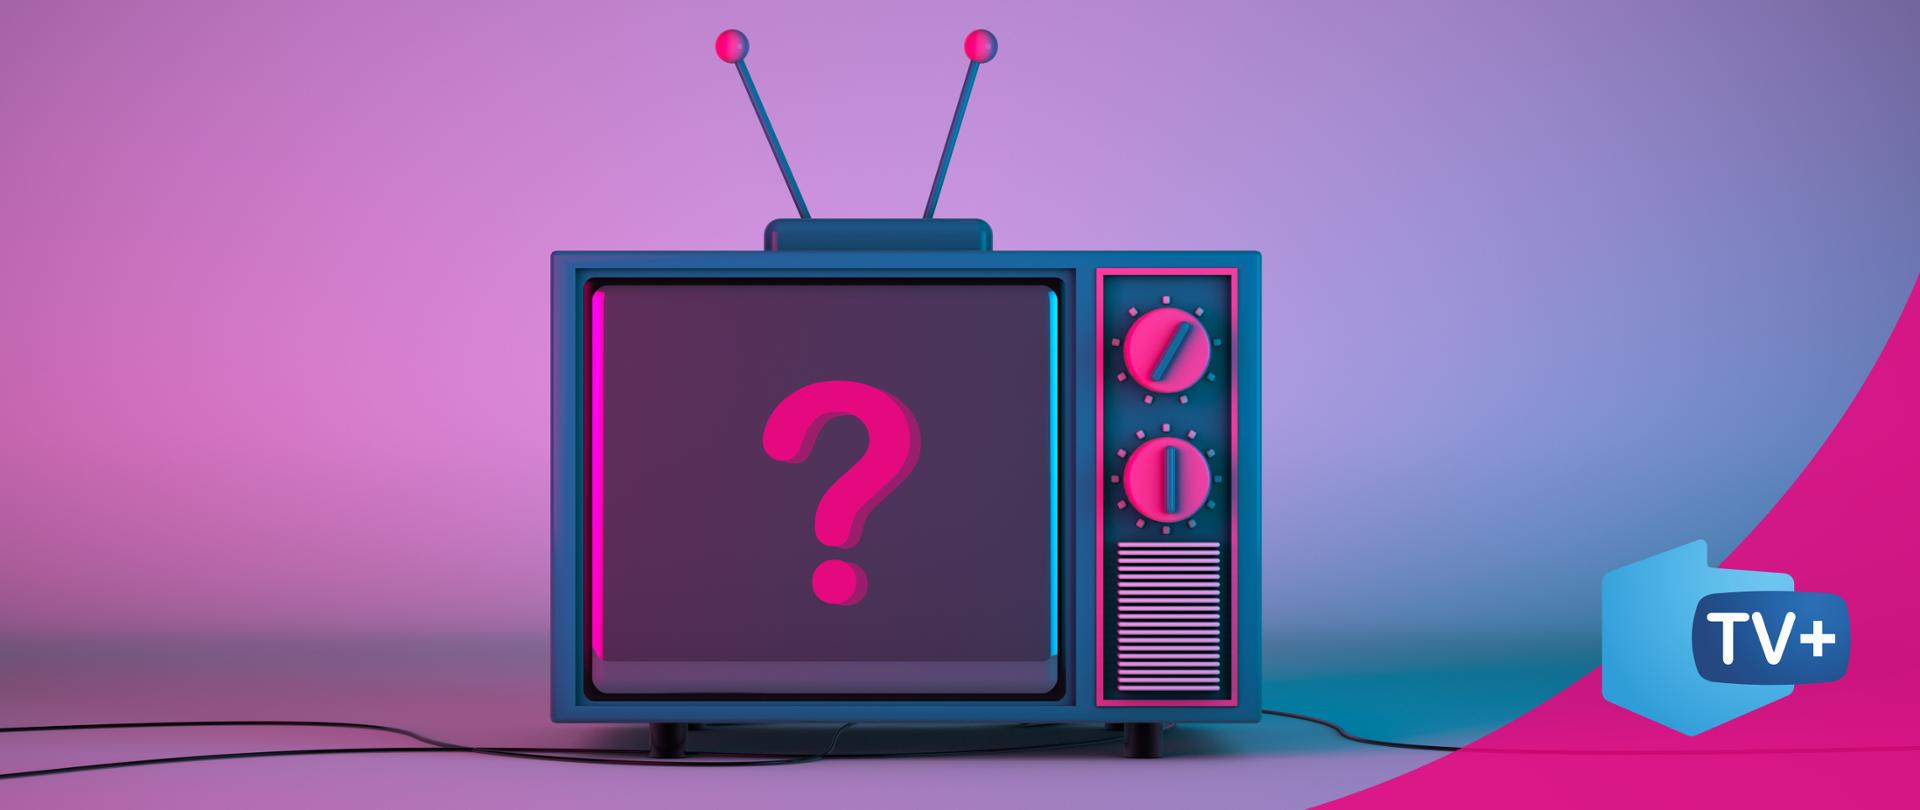 Grafika przedstawiająca telewizor, na ekranie znak zapytania. Kolorystyka fioletowo - różowa